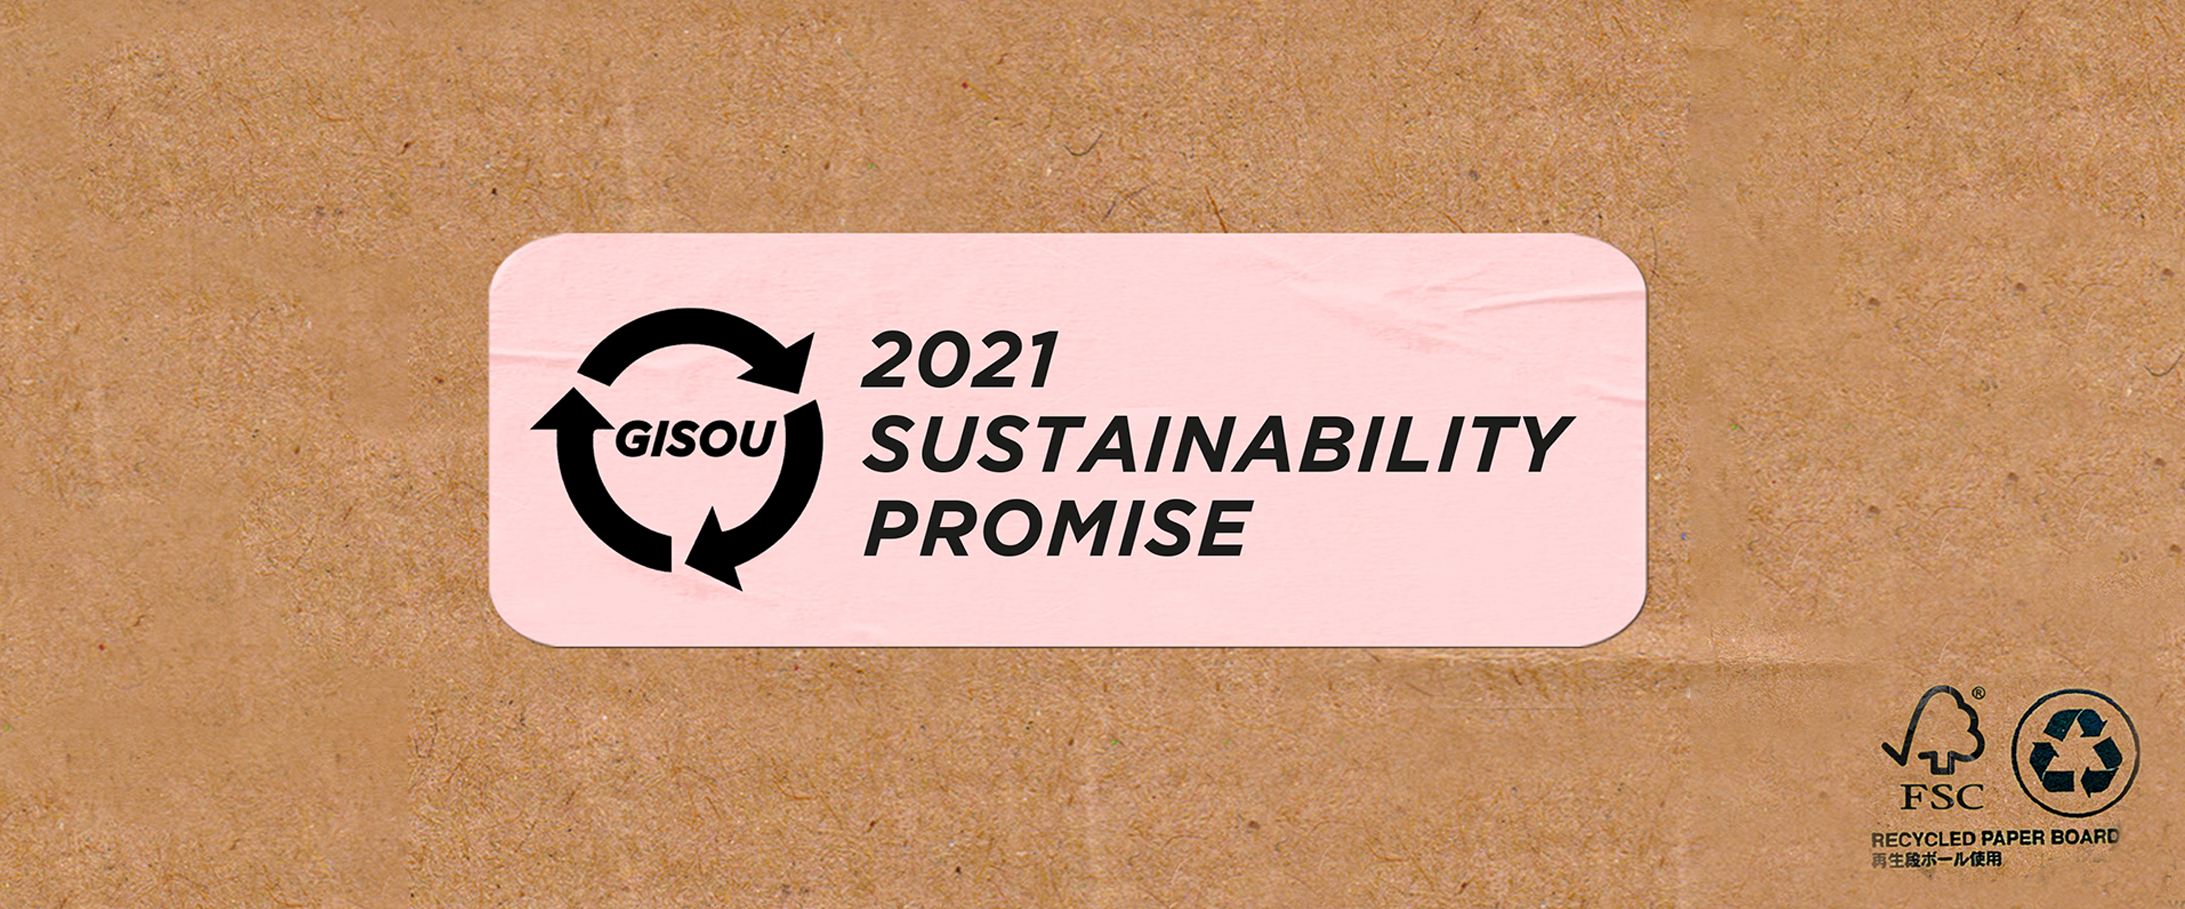 Mise à jour et promesse de développement durable de Gisou 2021